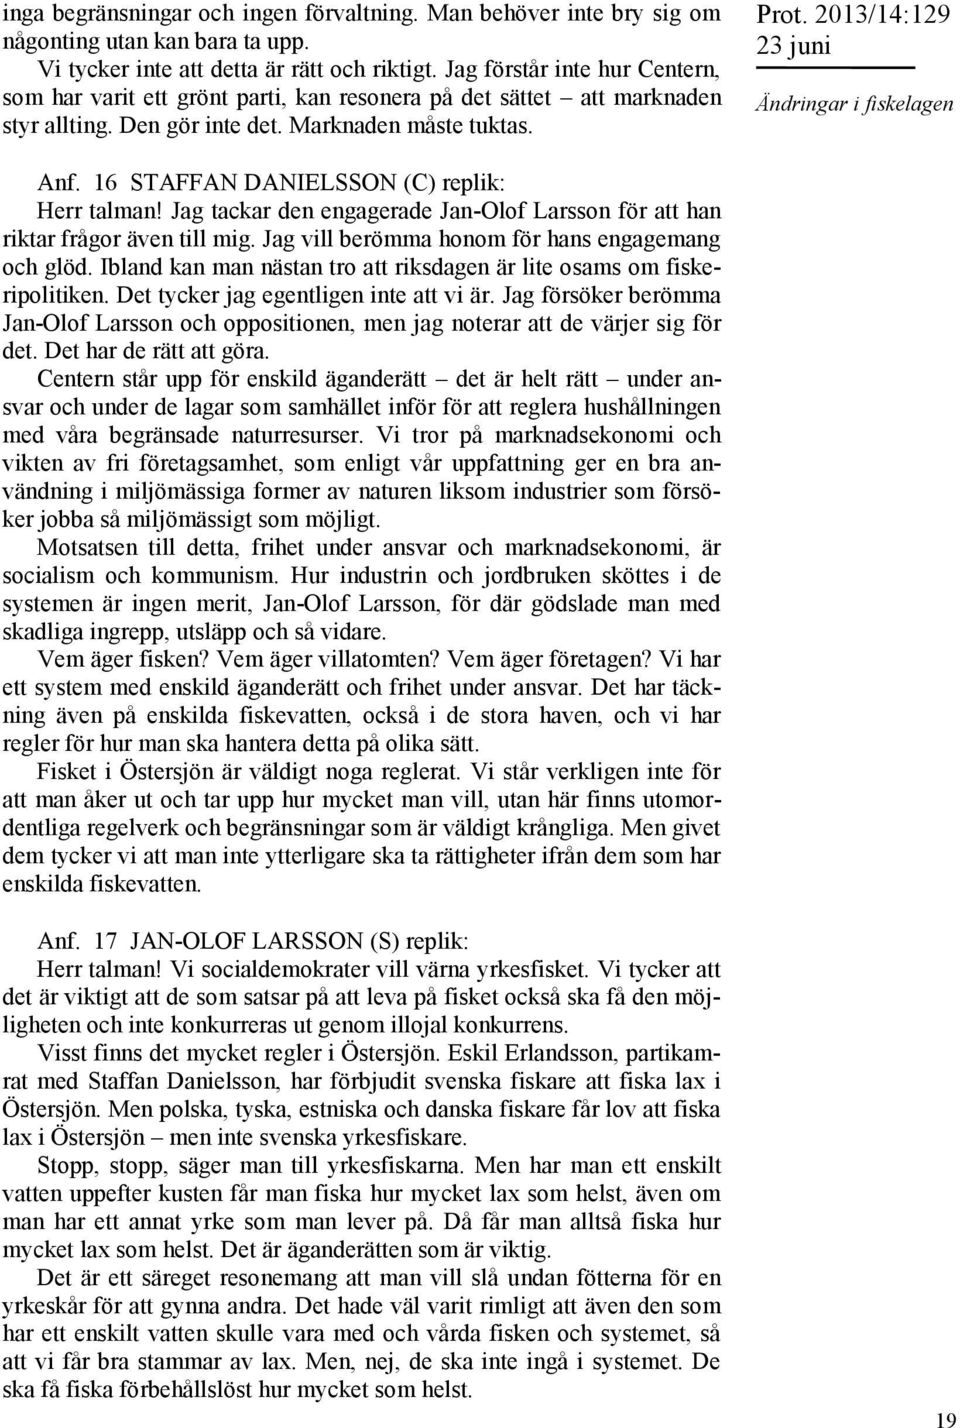 2013/14:129 Ändringar i fiskelagen Anf. 16 STAFFAN DANIELSSON (C) replik: Herr talman! Jag tackar den engagerade Jan-Olof Larsson för att han riktar frågor även till mig.